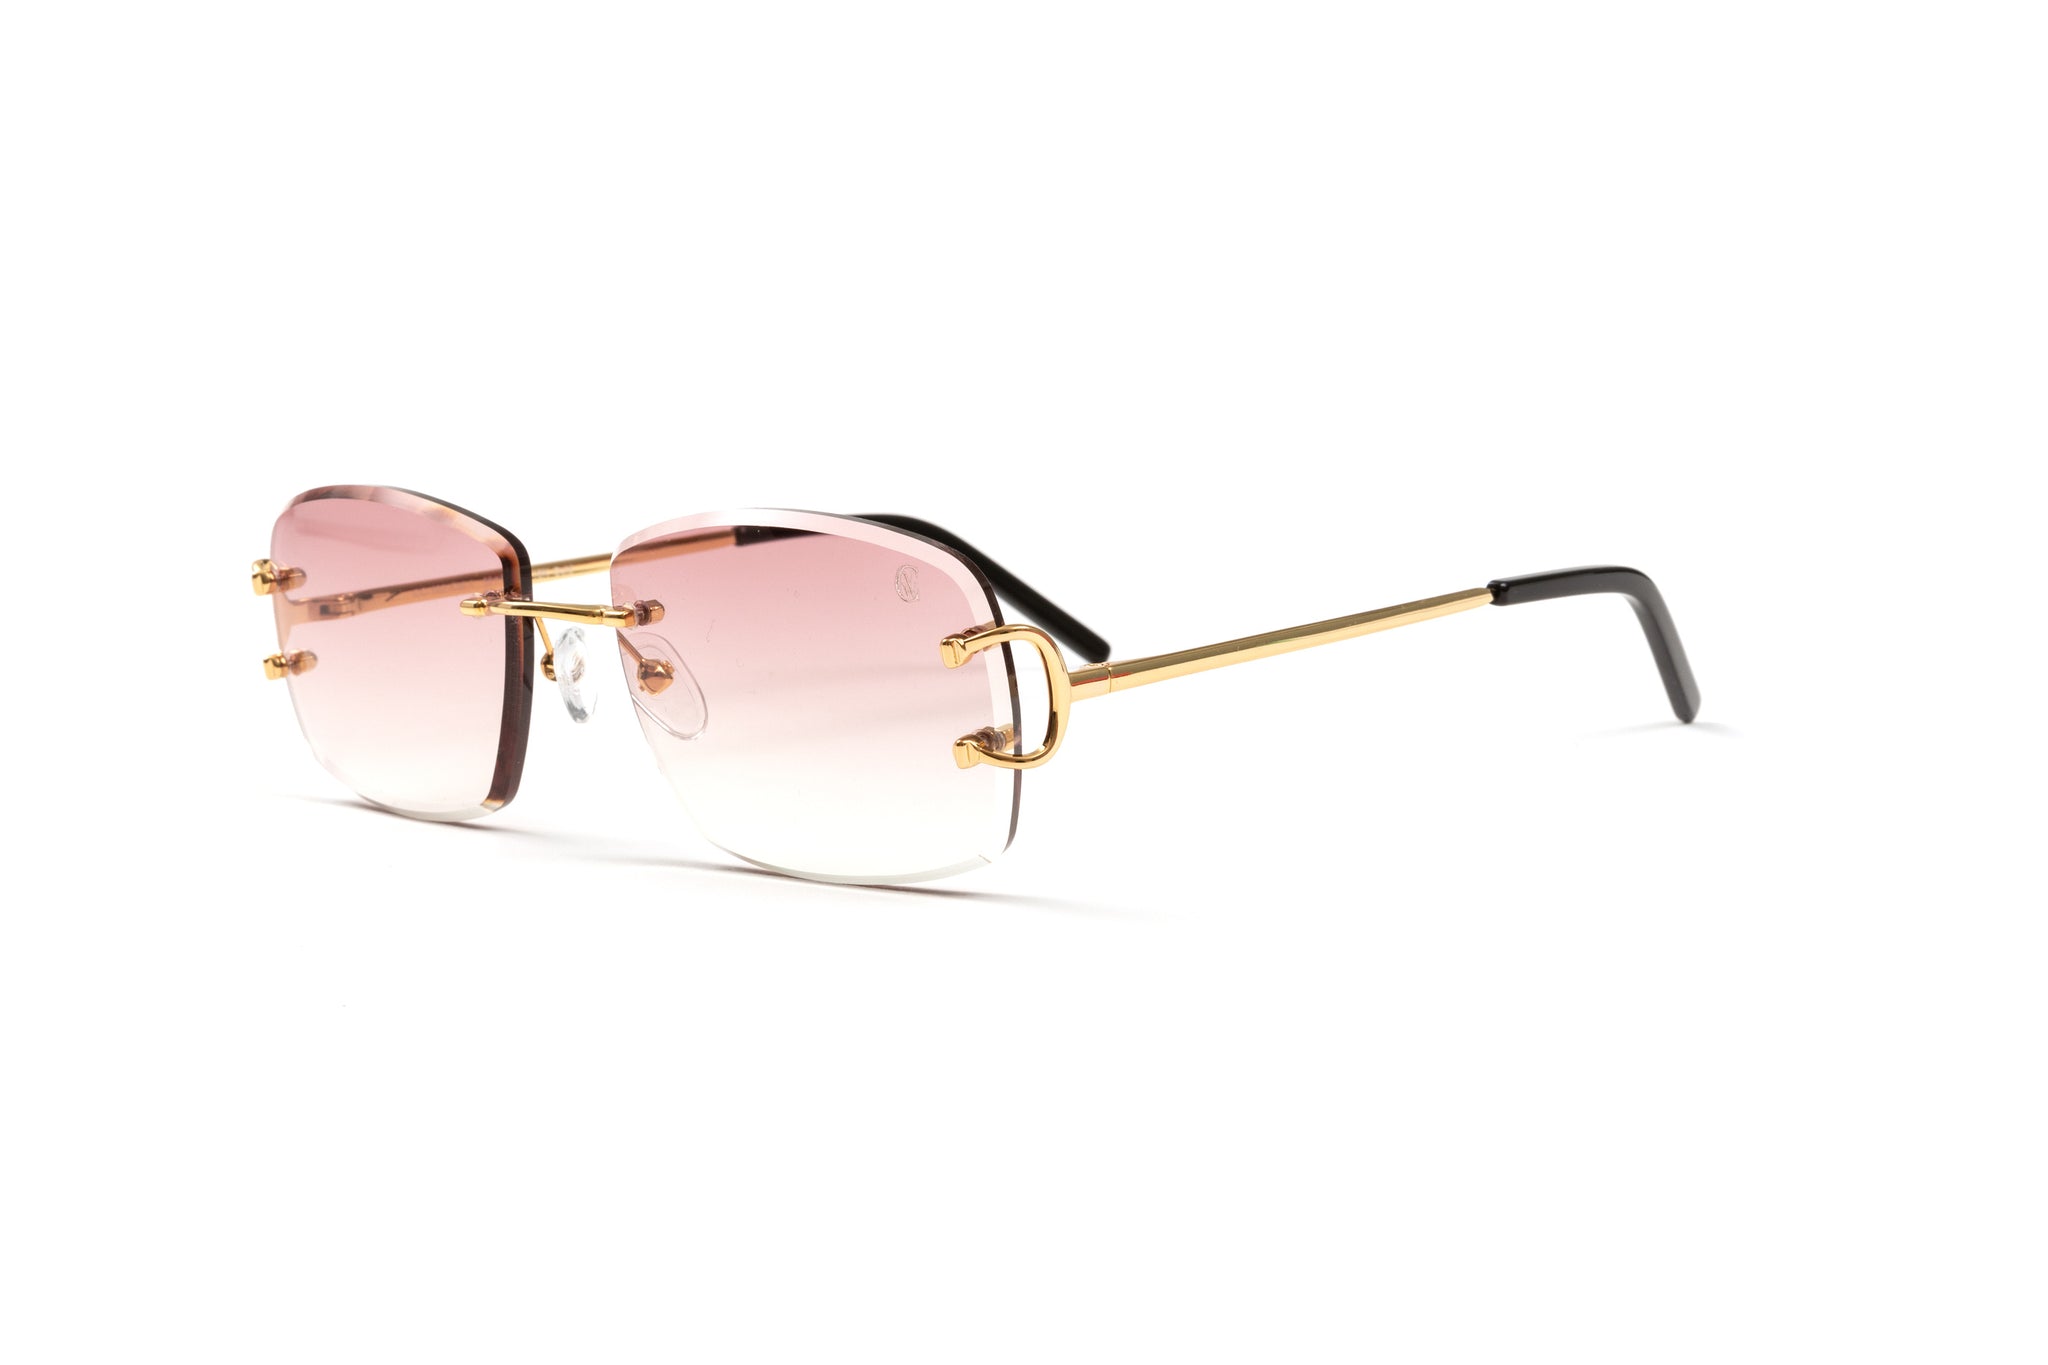 https://vwceyewear.com/cdn/shop/products/Rimless-Classic-C-by-VWC-18kt-gold-glasses-2_2048x2048.jpg?v=1613705983